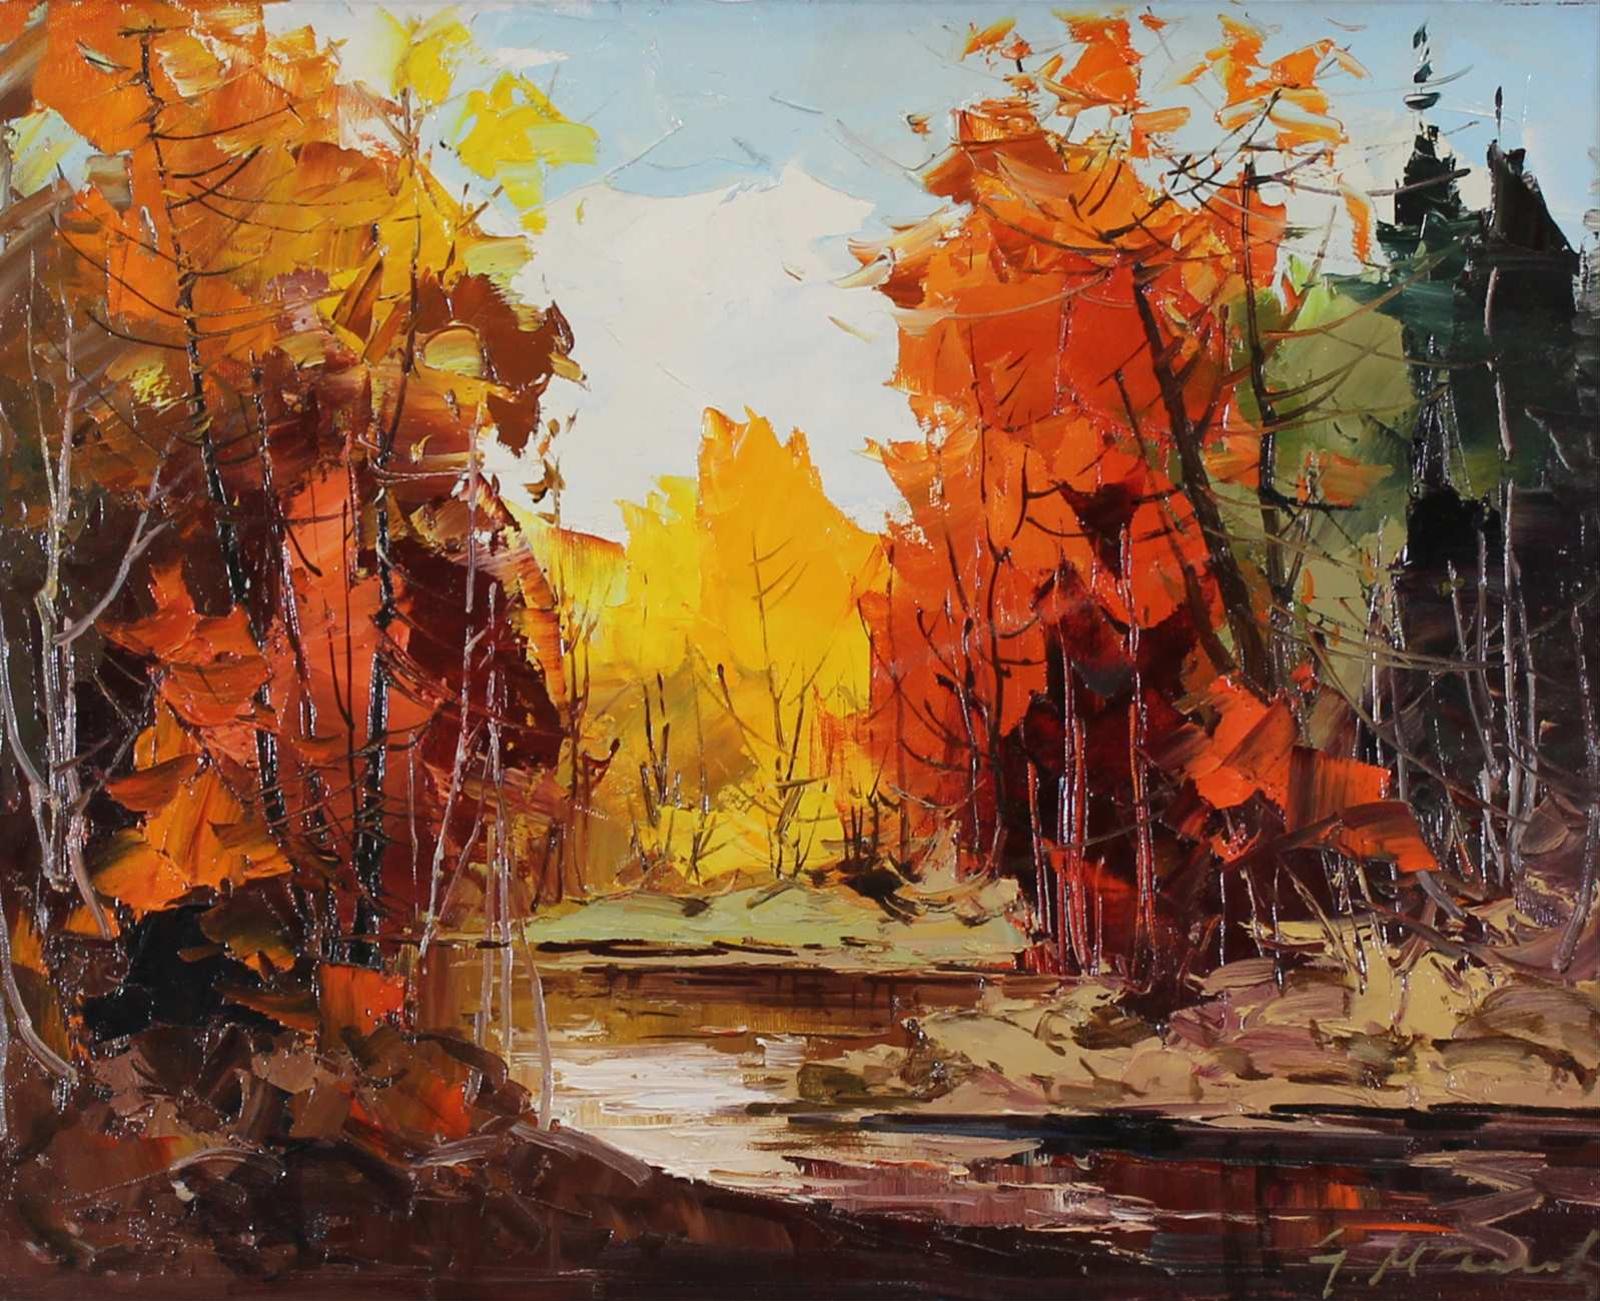 Geza (Gordon) Marich (1913-1985) - Untitled, River in Autumn